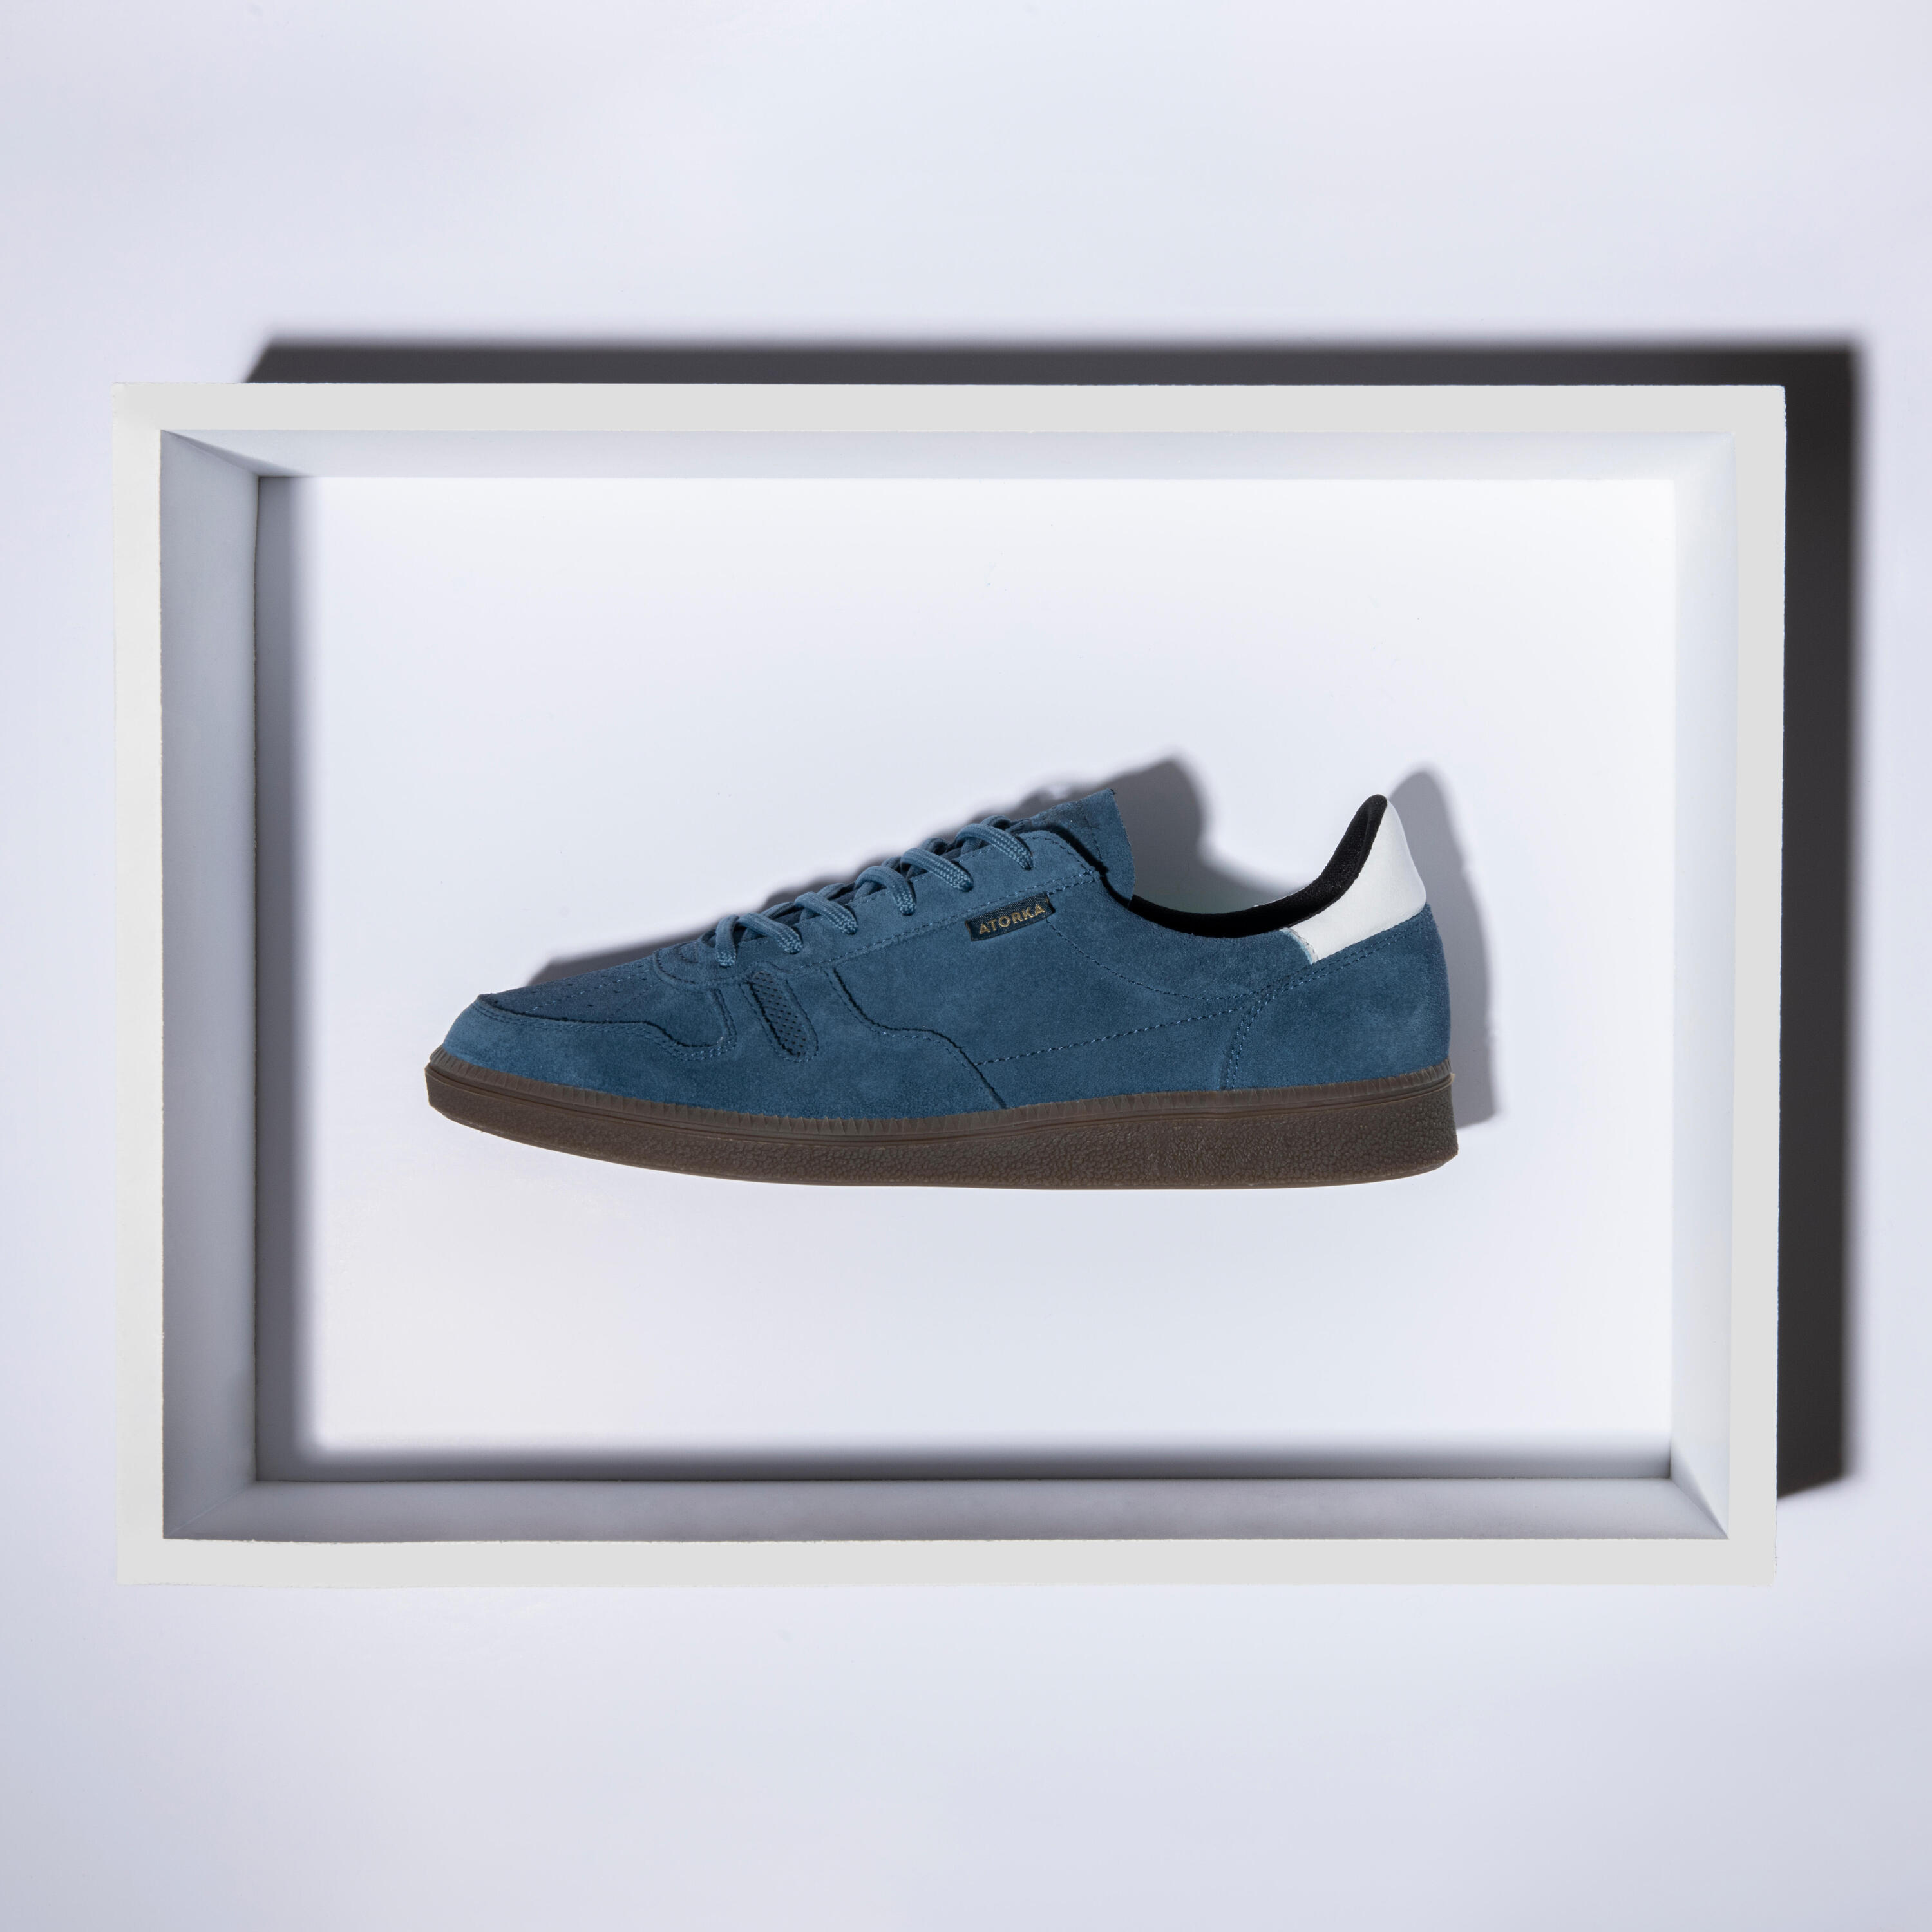 Men's/Women's Handball Goalkeeper Shoes GK500 - Blue/White 5/16